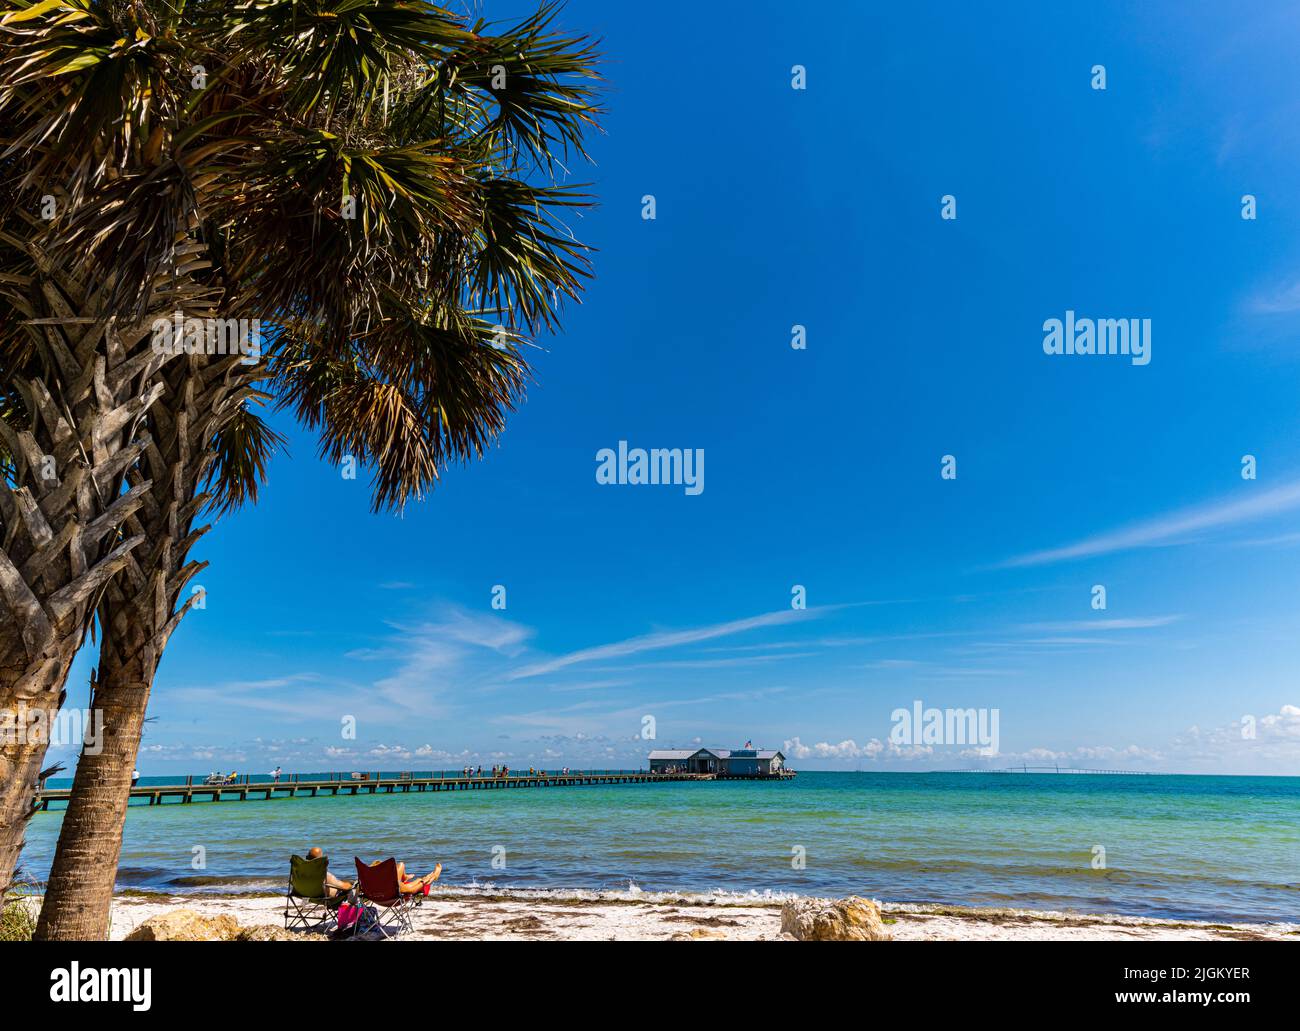 Bains de soleil sur la plage avec Amelia Island Pier au loin, Amelia Island, Floride, États-Unis Banque D'Images